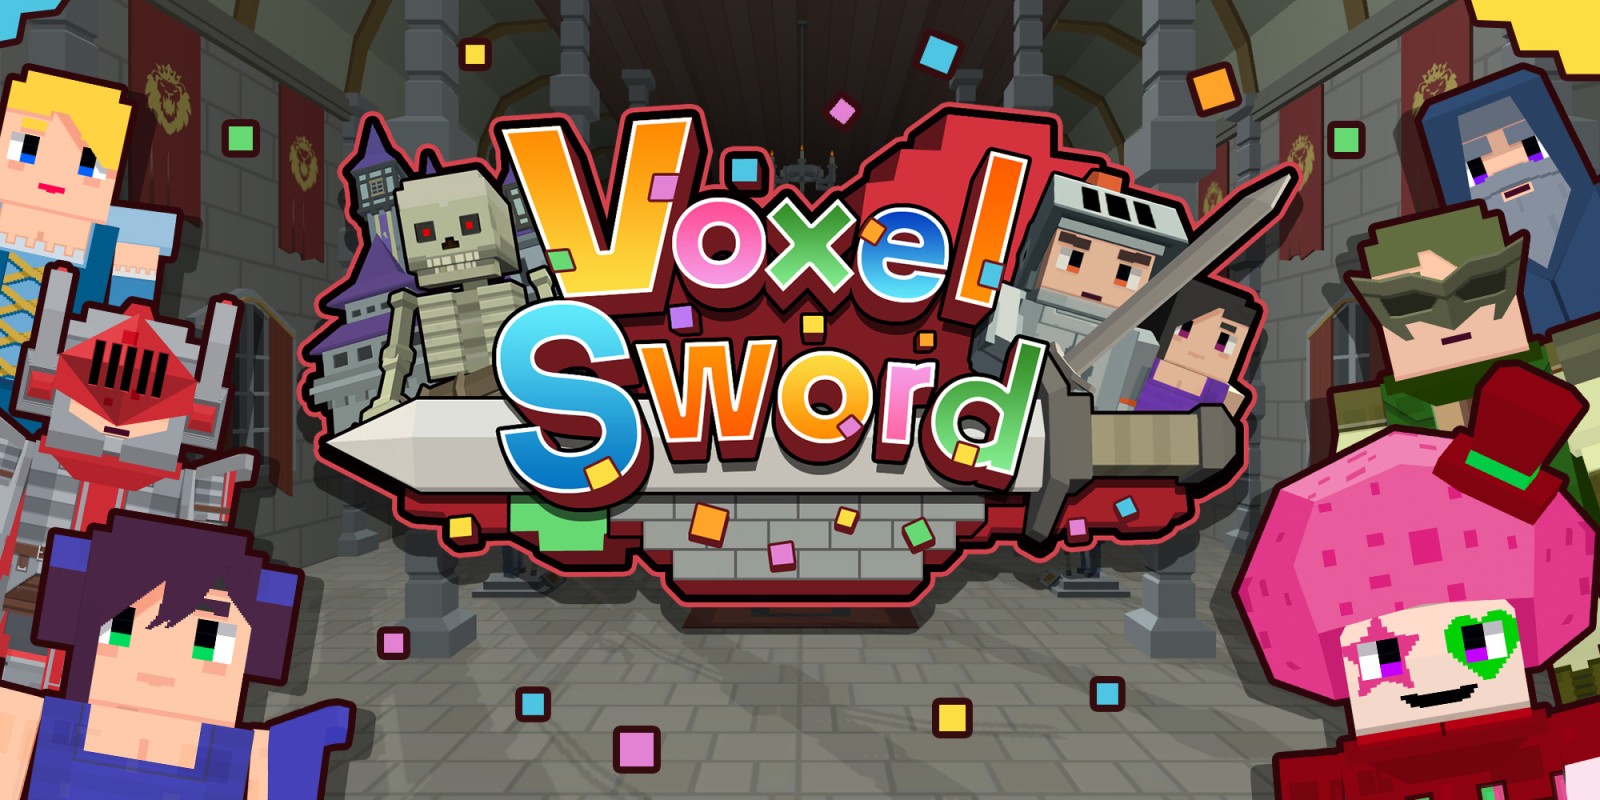 Voxel Sword